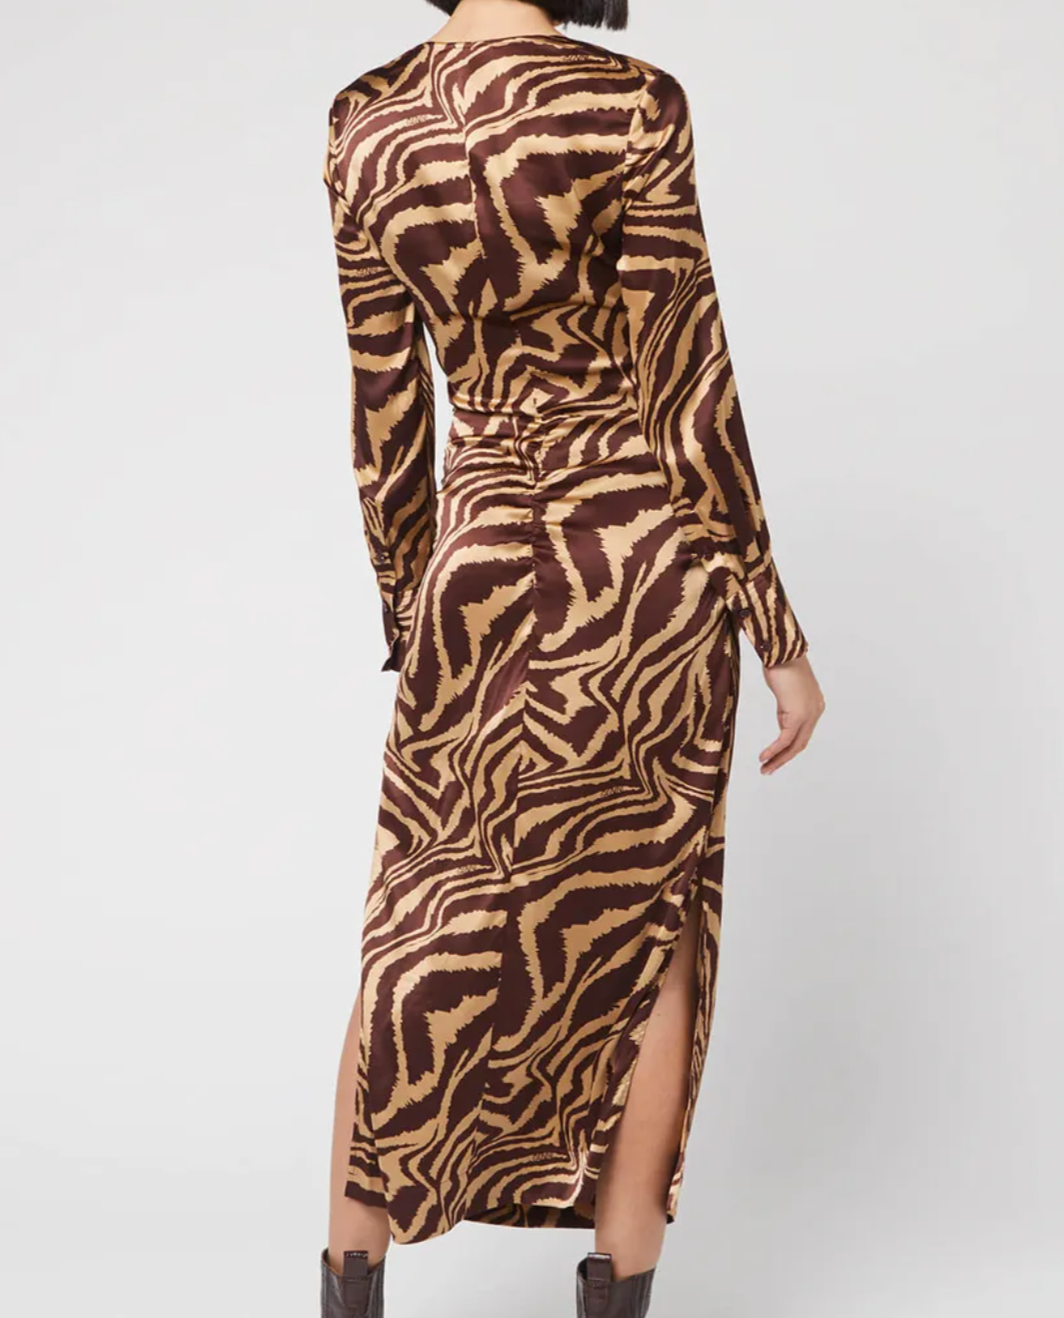 Ganni's Ruche Silk Zebra Print Dress